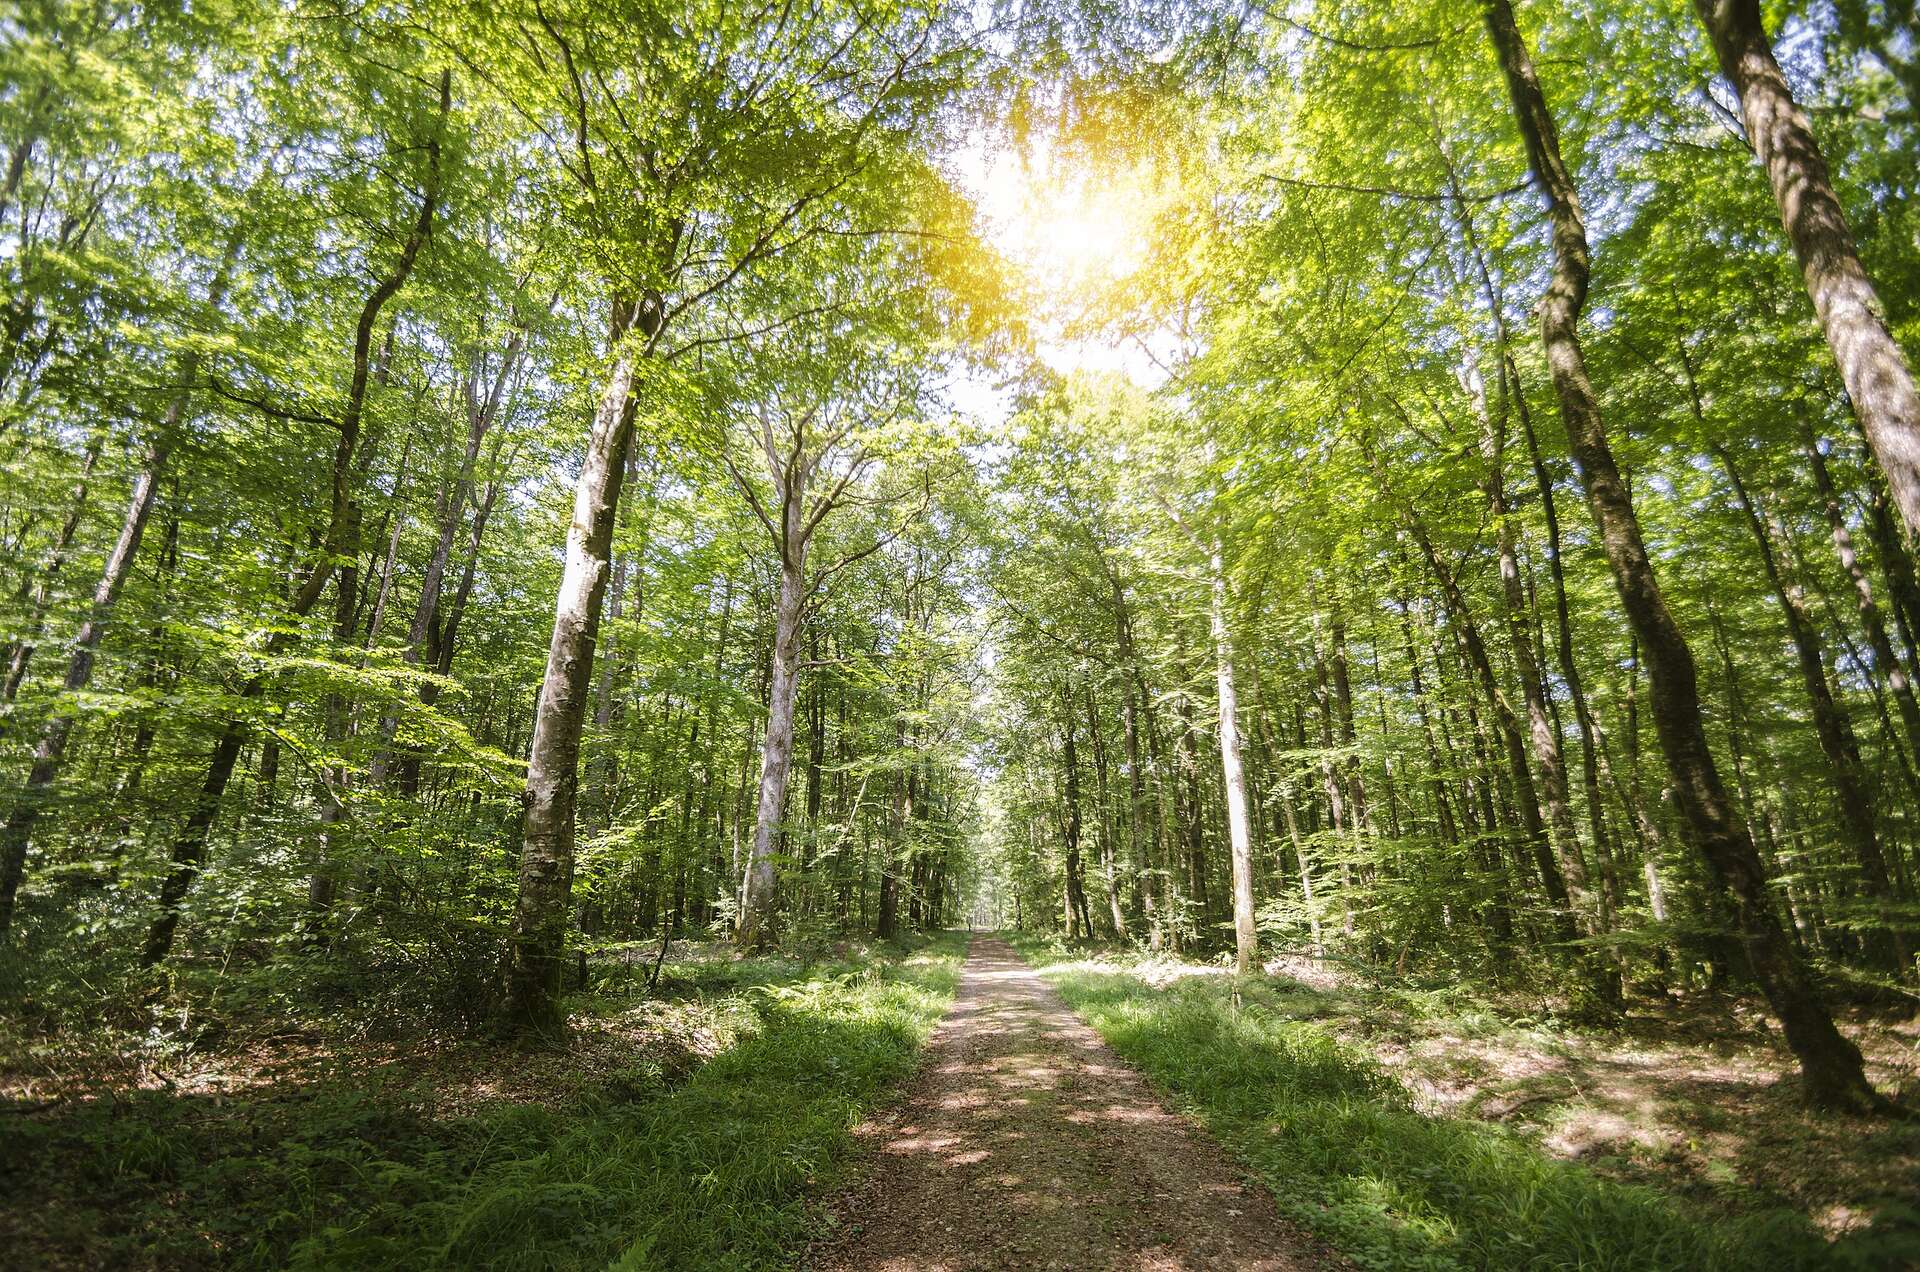 « Planter un milliard d’arbres en France d'ici 2030 » : est-ce possible et souhaitable ?